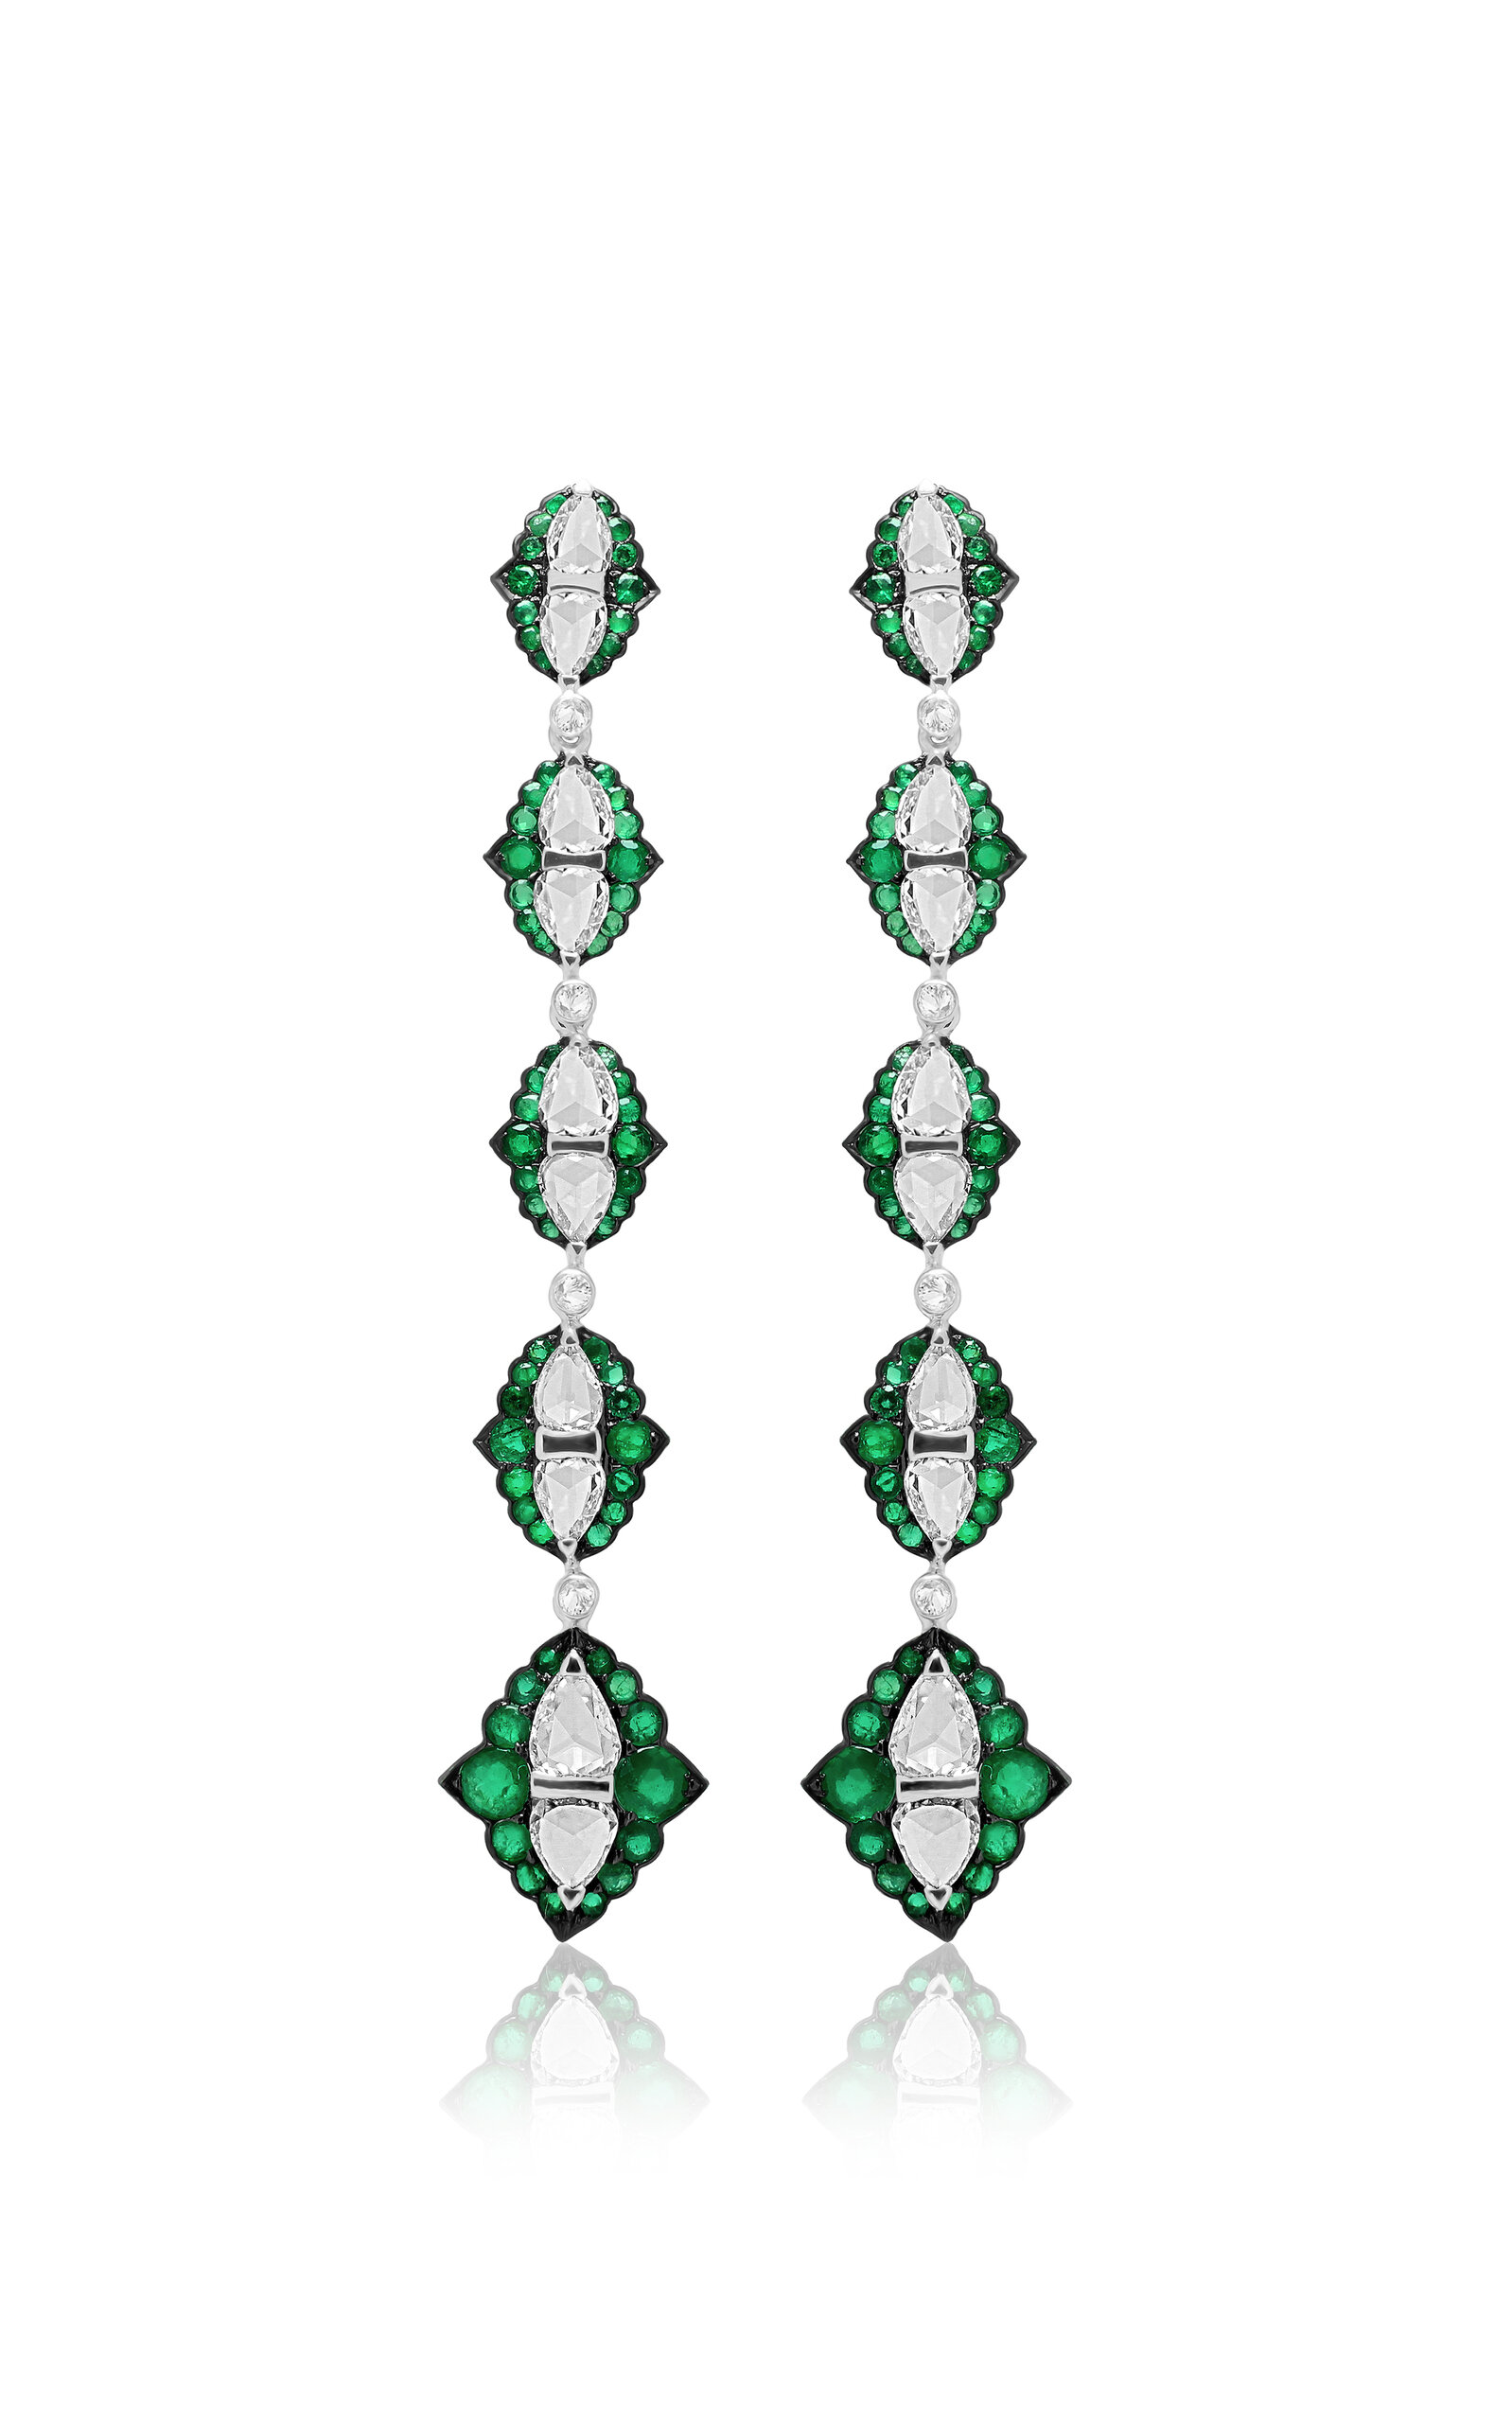 18K White Gold Architectural Splendor Diamond and Emerald Earrings